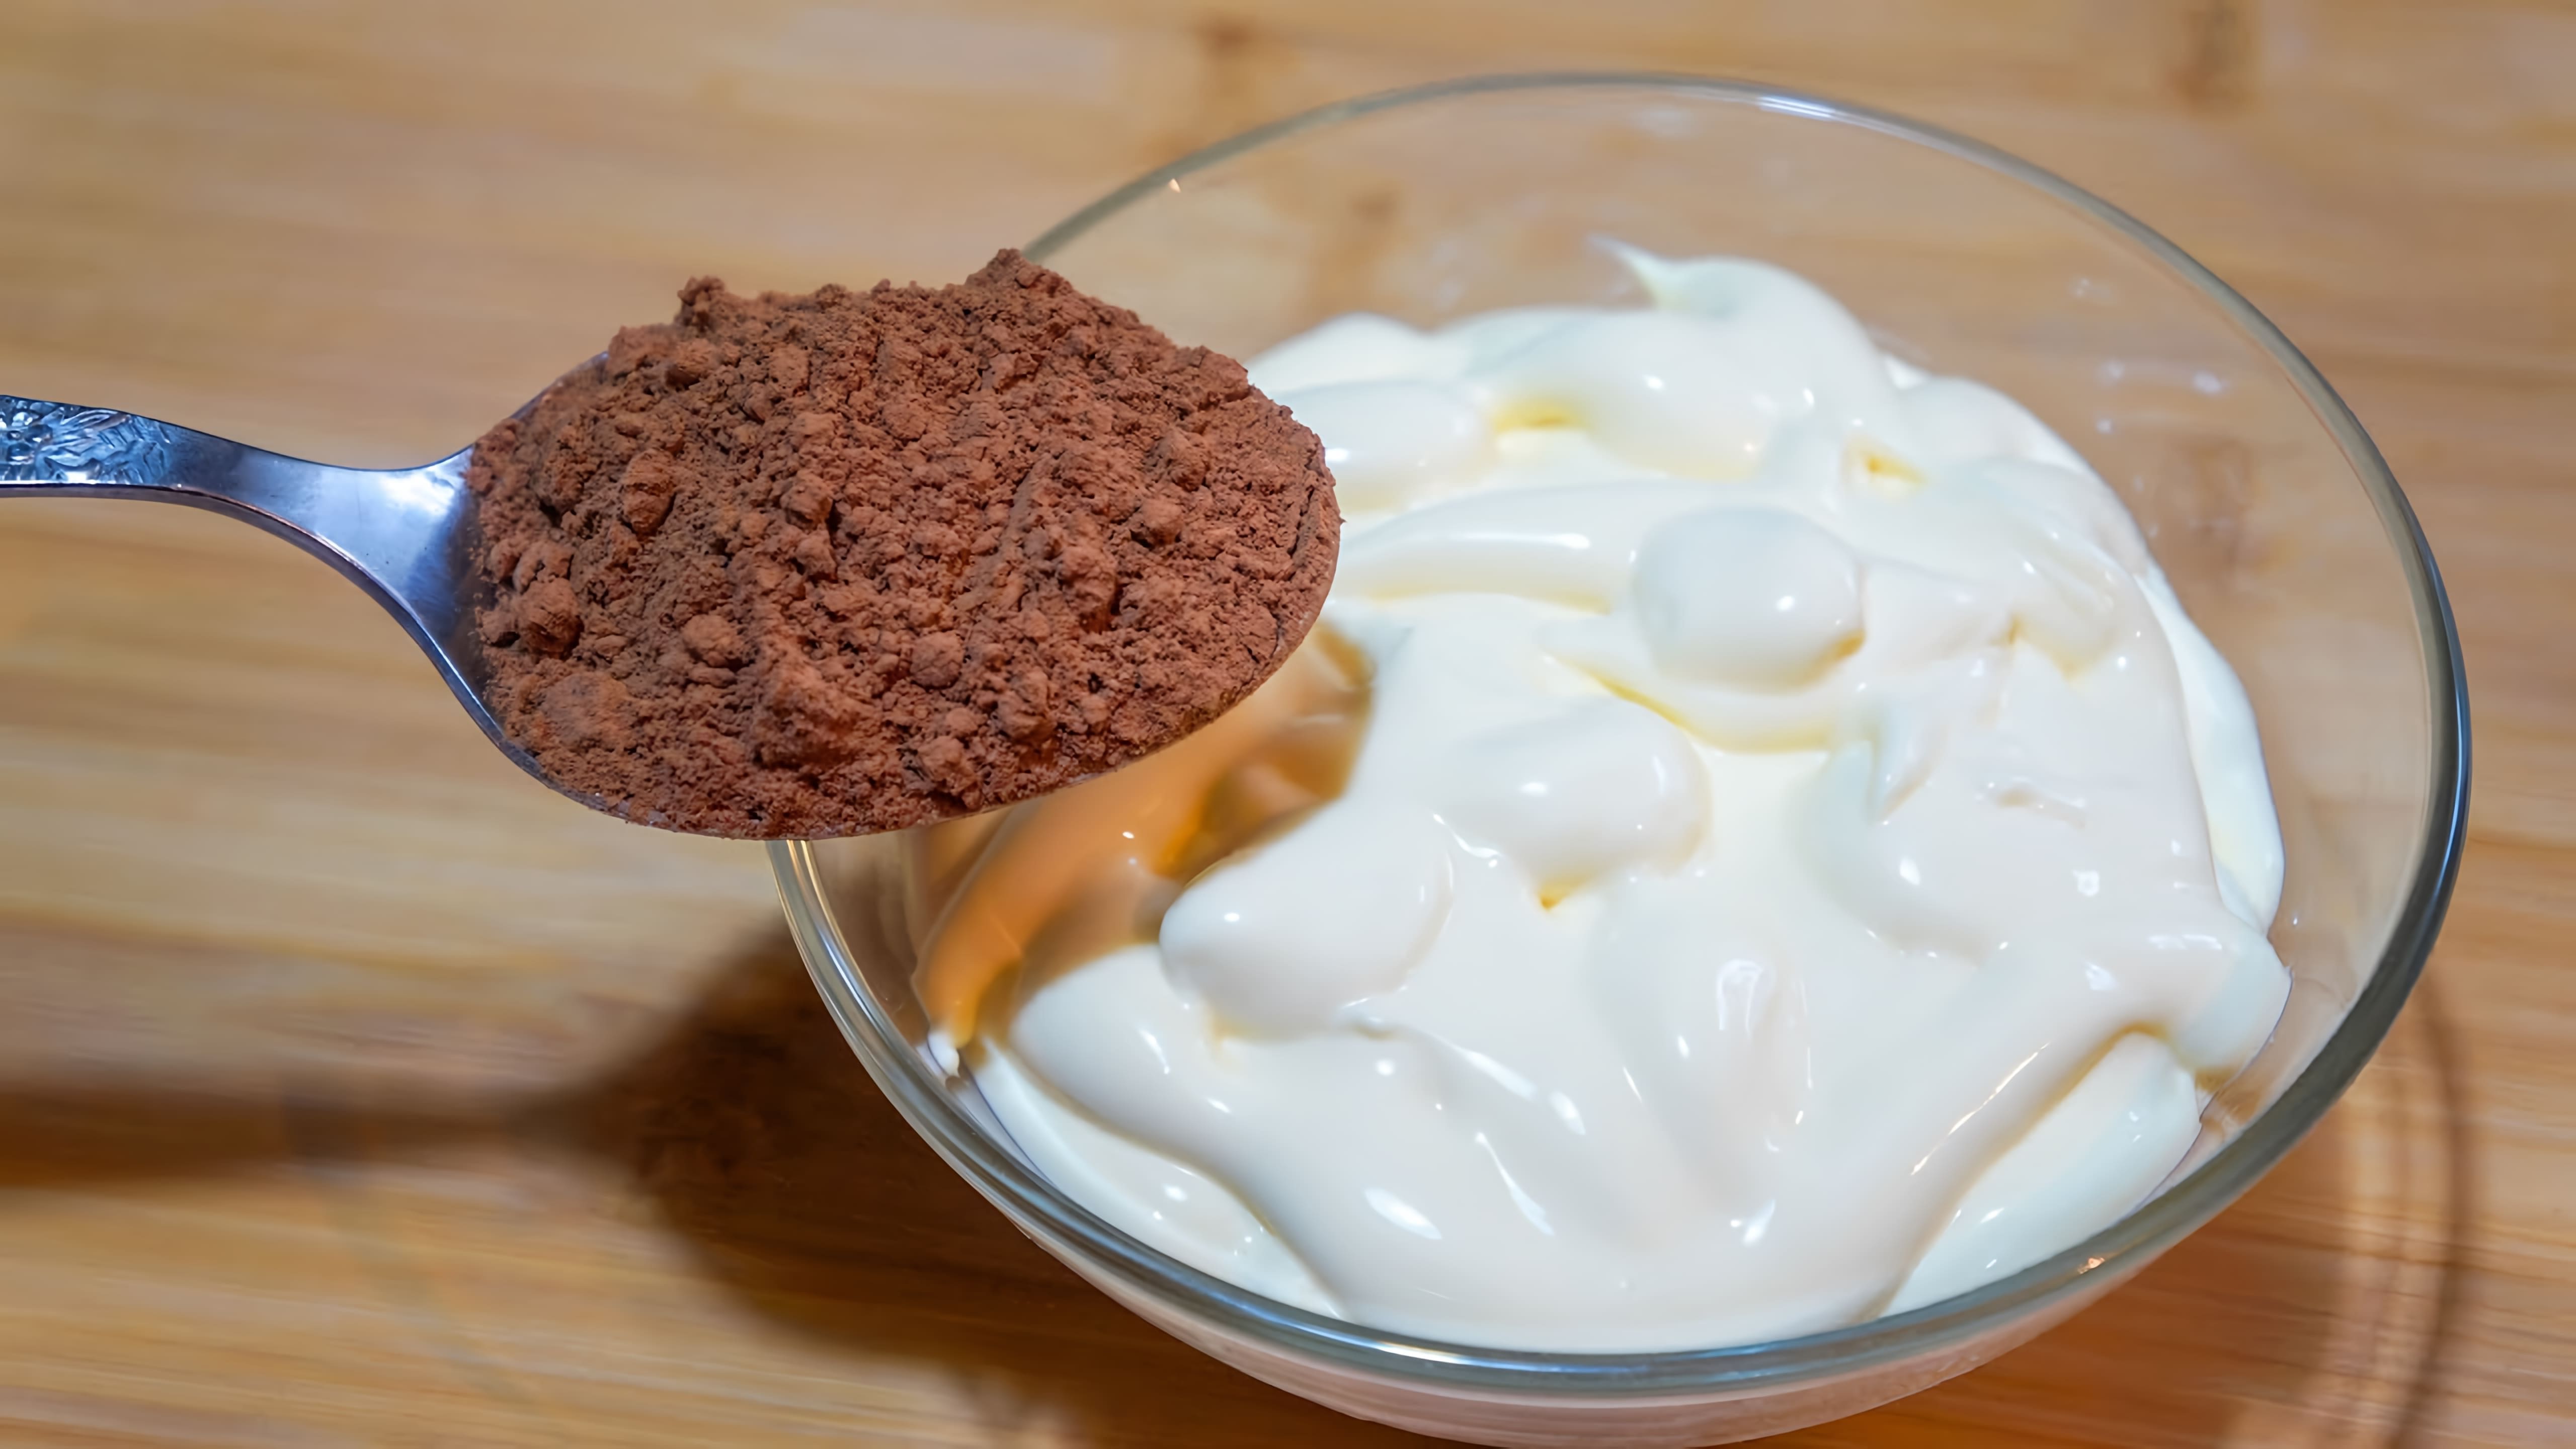 Видео представляет необычный рецепт советских времен, в котором майонез смешивается с какао-порошком для приготовления сладкого десерта